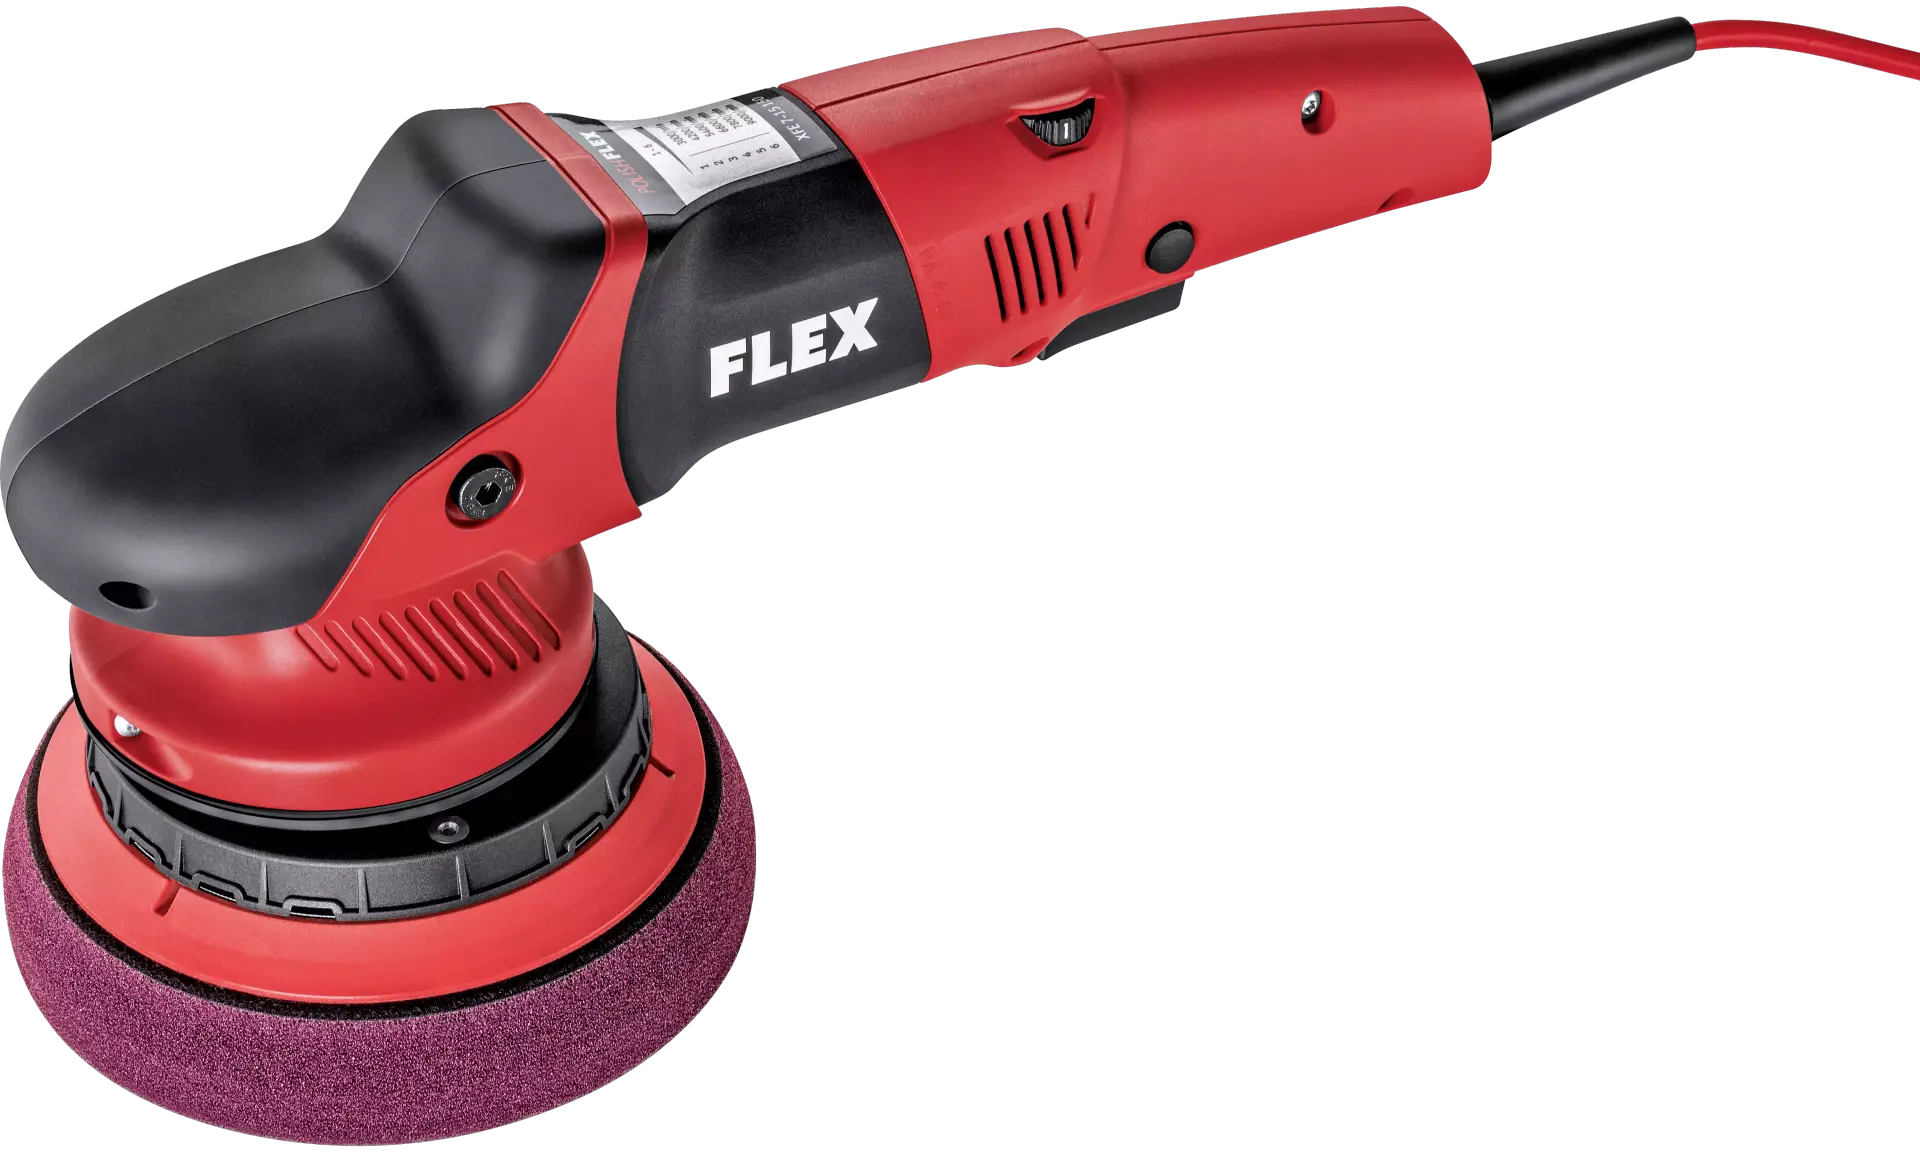 Flex fxe 7-15-150